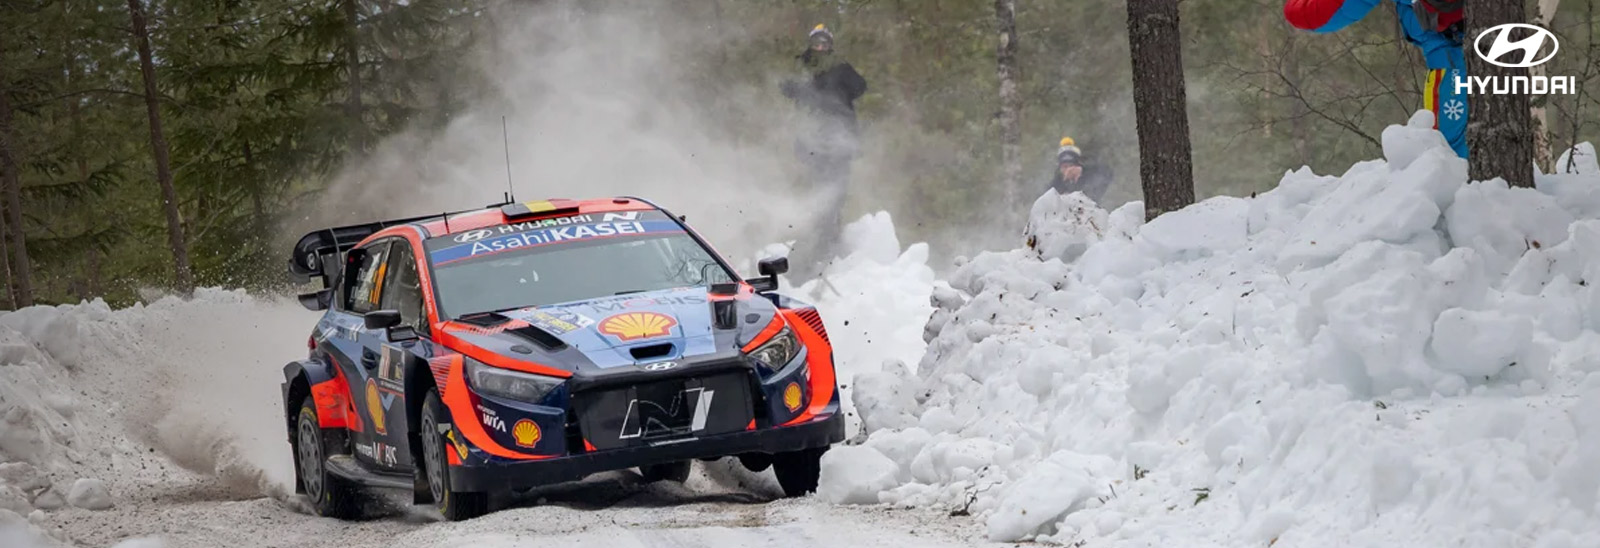 Auto Hyundai Motorsport en circuito con nieve